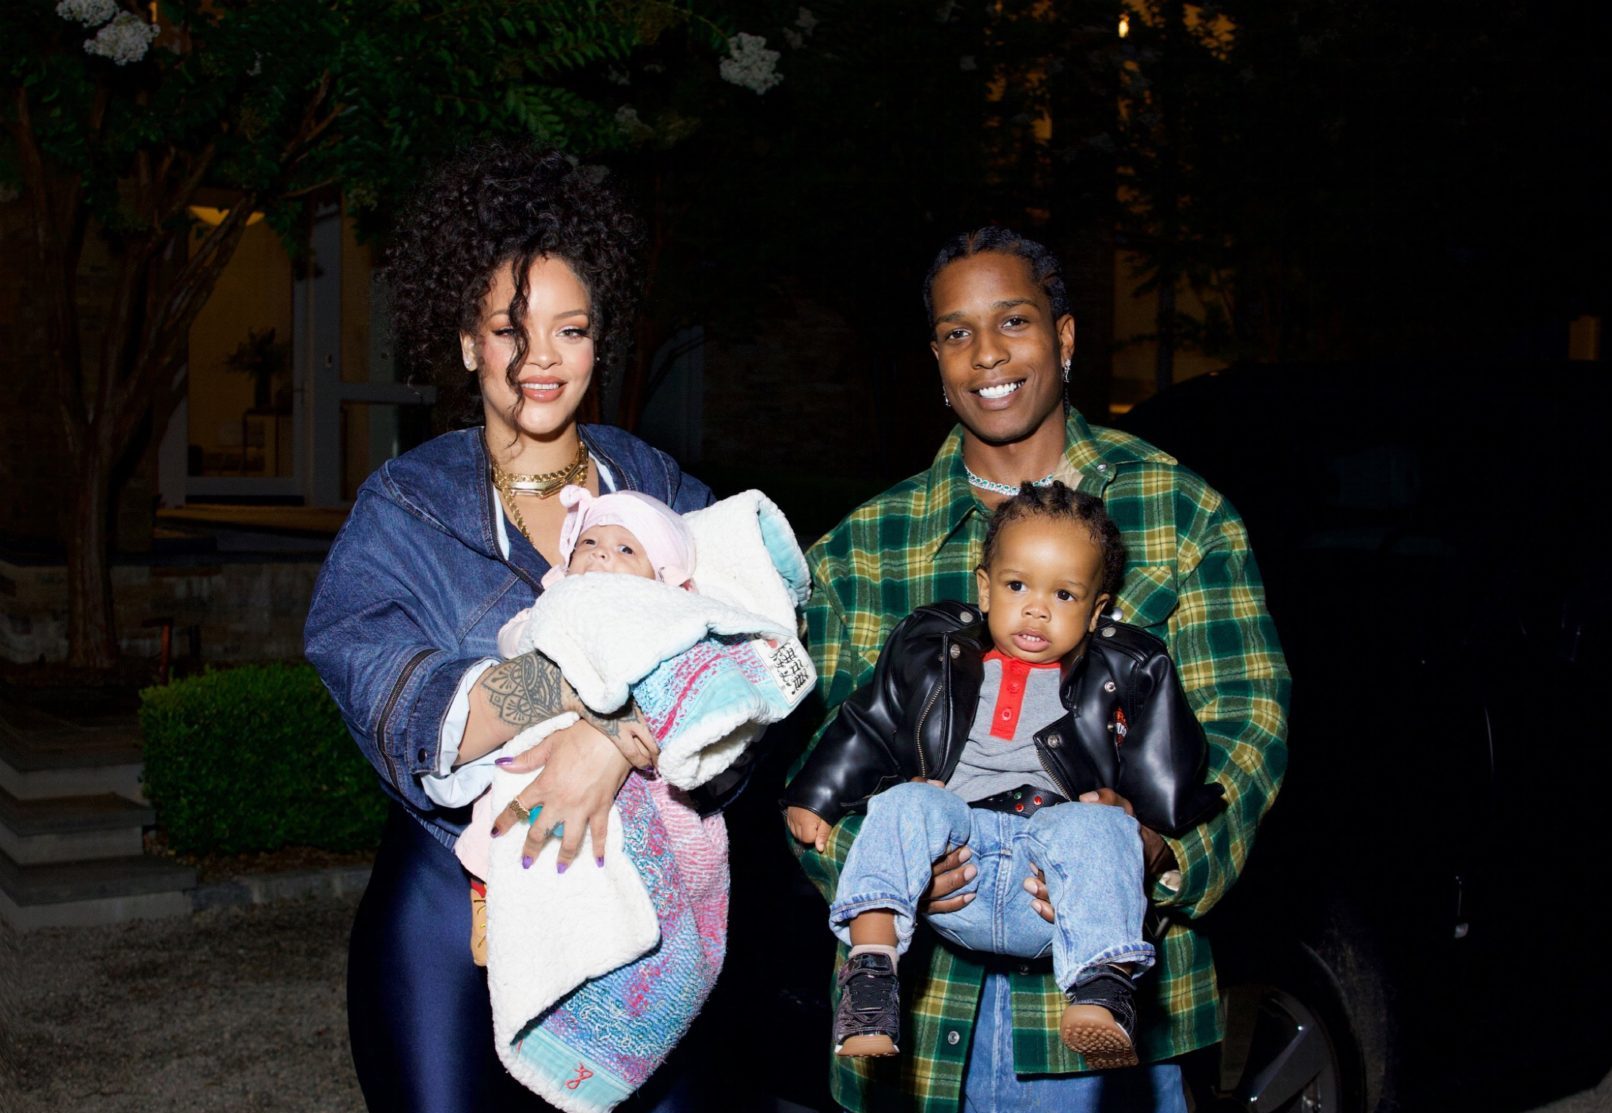 PHOTOS: Rihanna & A$AP Rocky Reveal Son's Face For 1st Time